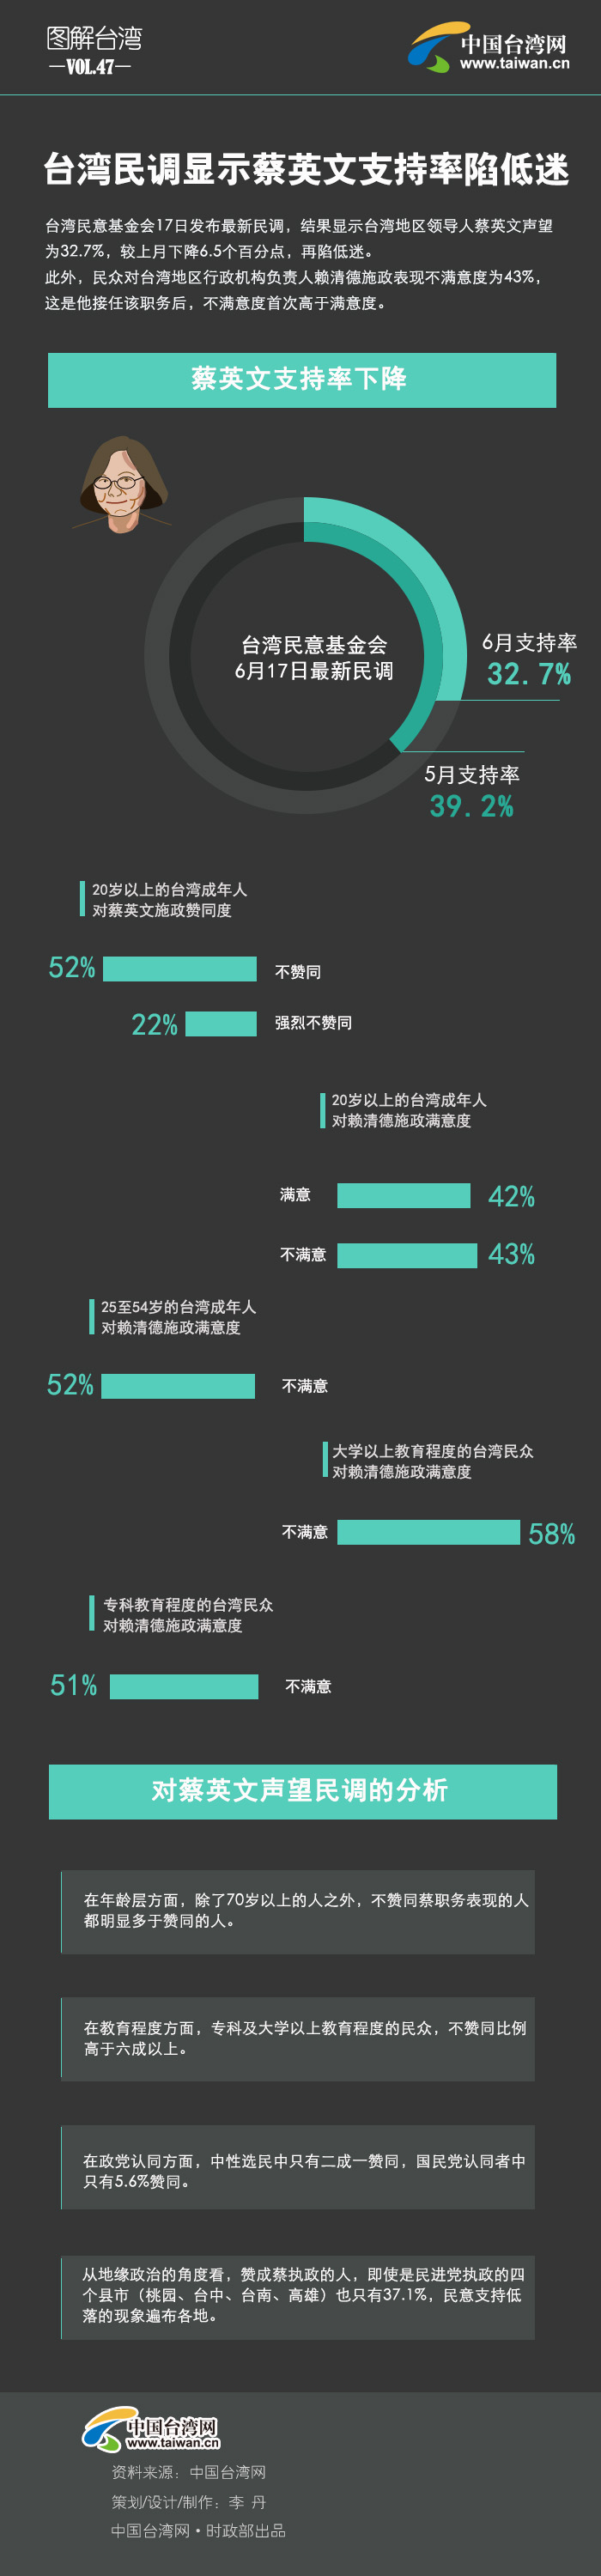  台湾民调显示蔡英文支持率陷低迷